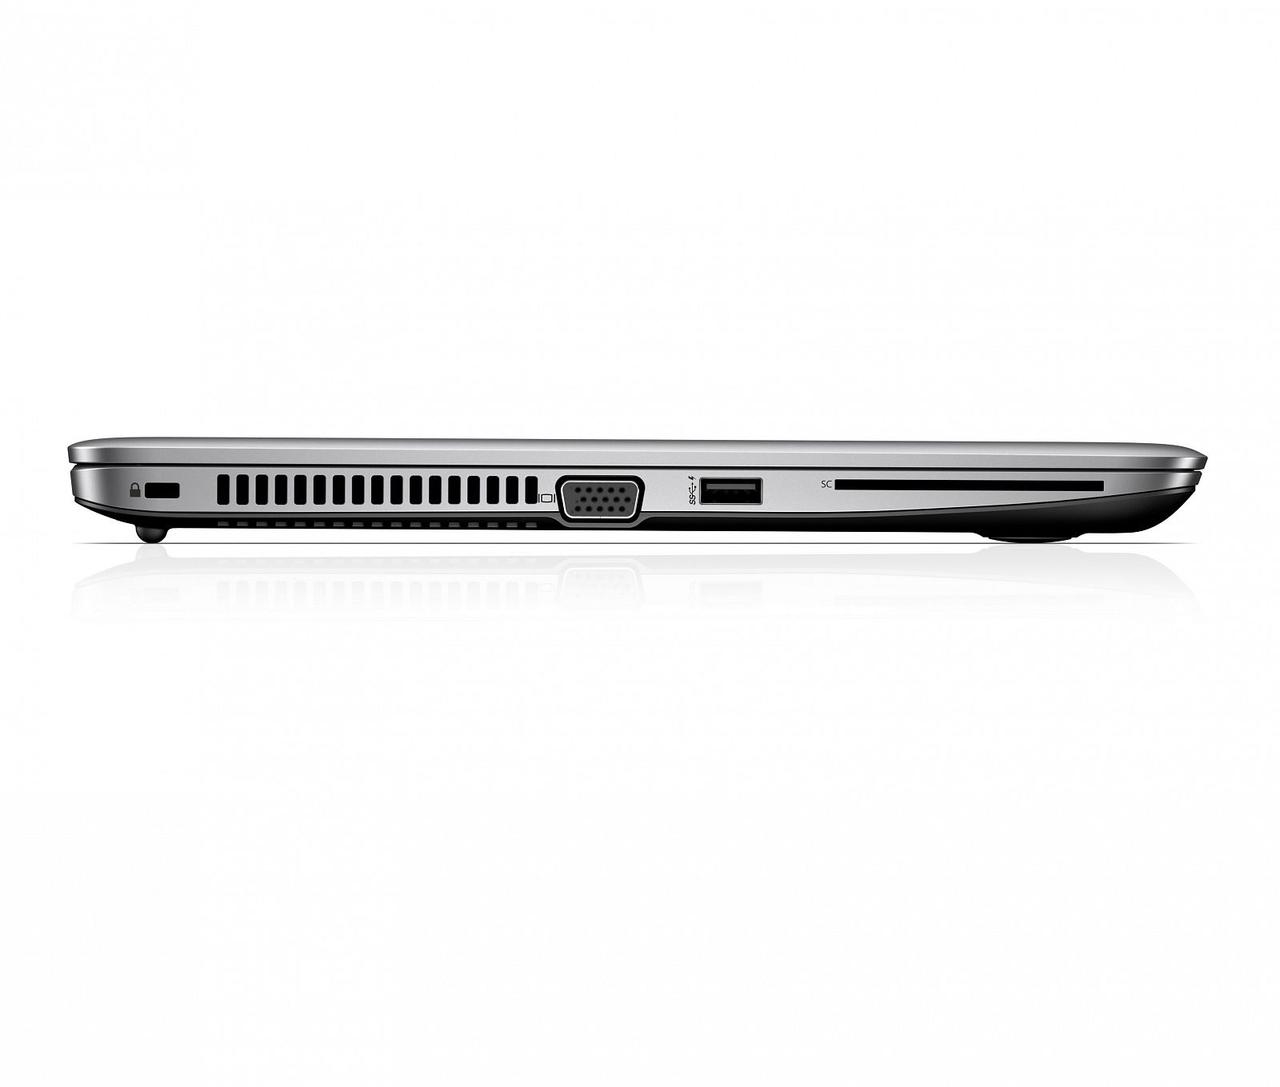 Б/в Ноутбук HP EliteBook 840 G3 Intel Core i5-6300U/4 Гб/256 Гб/Клас C